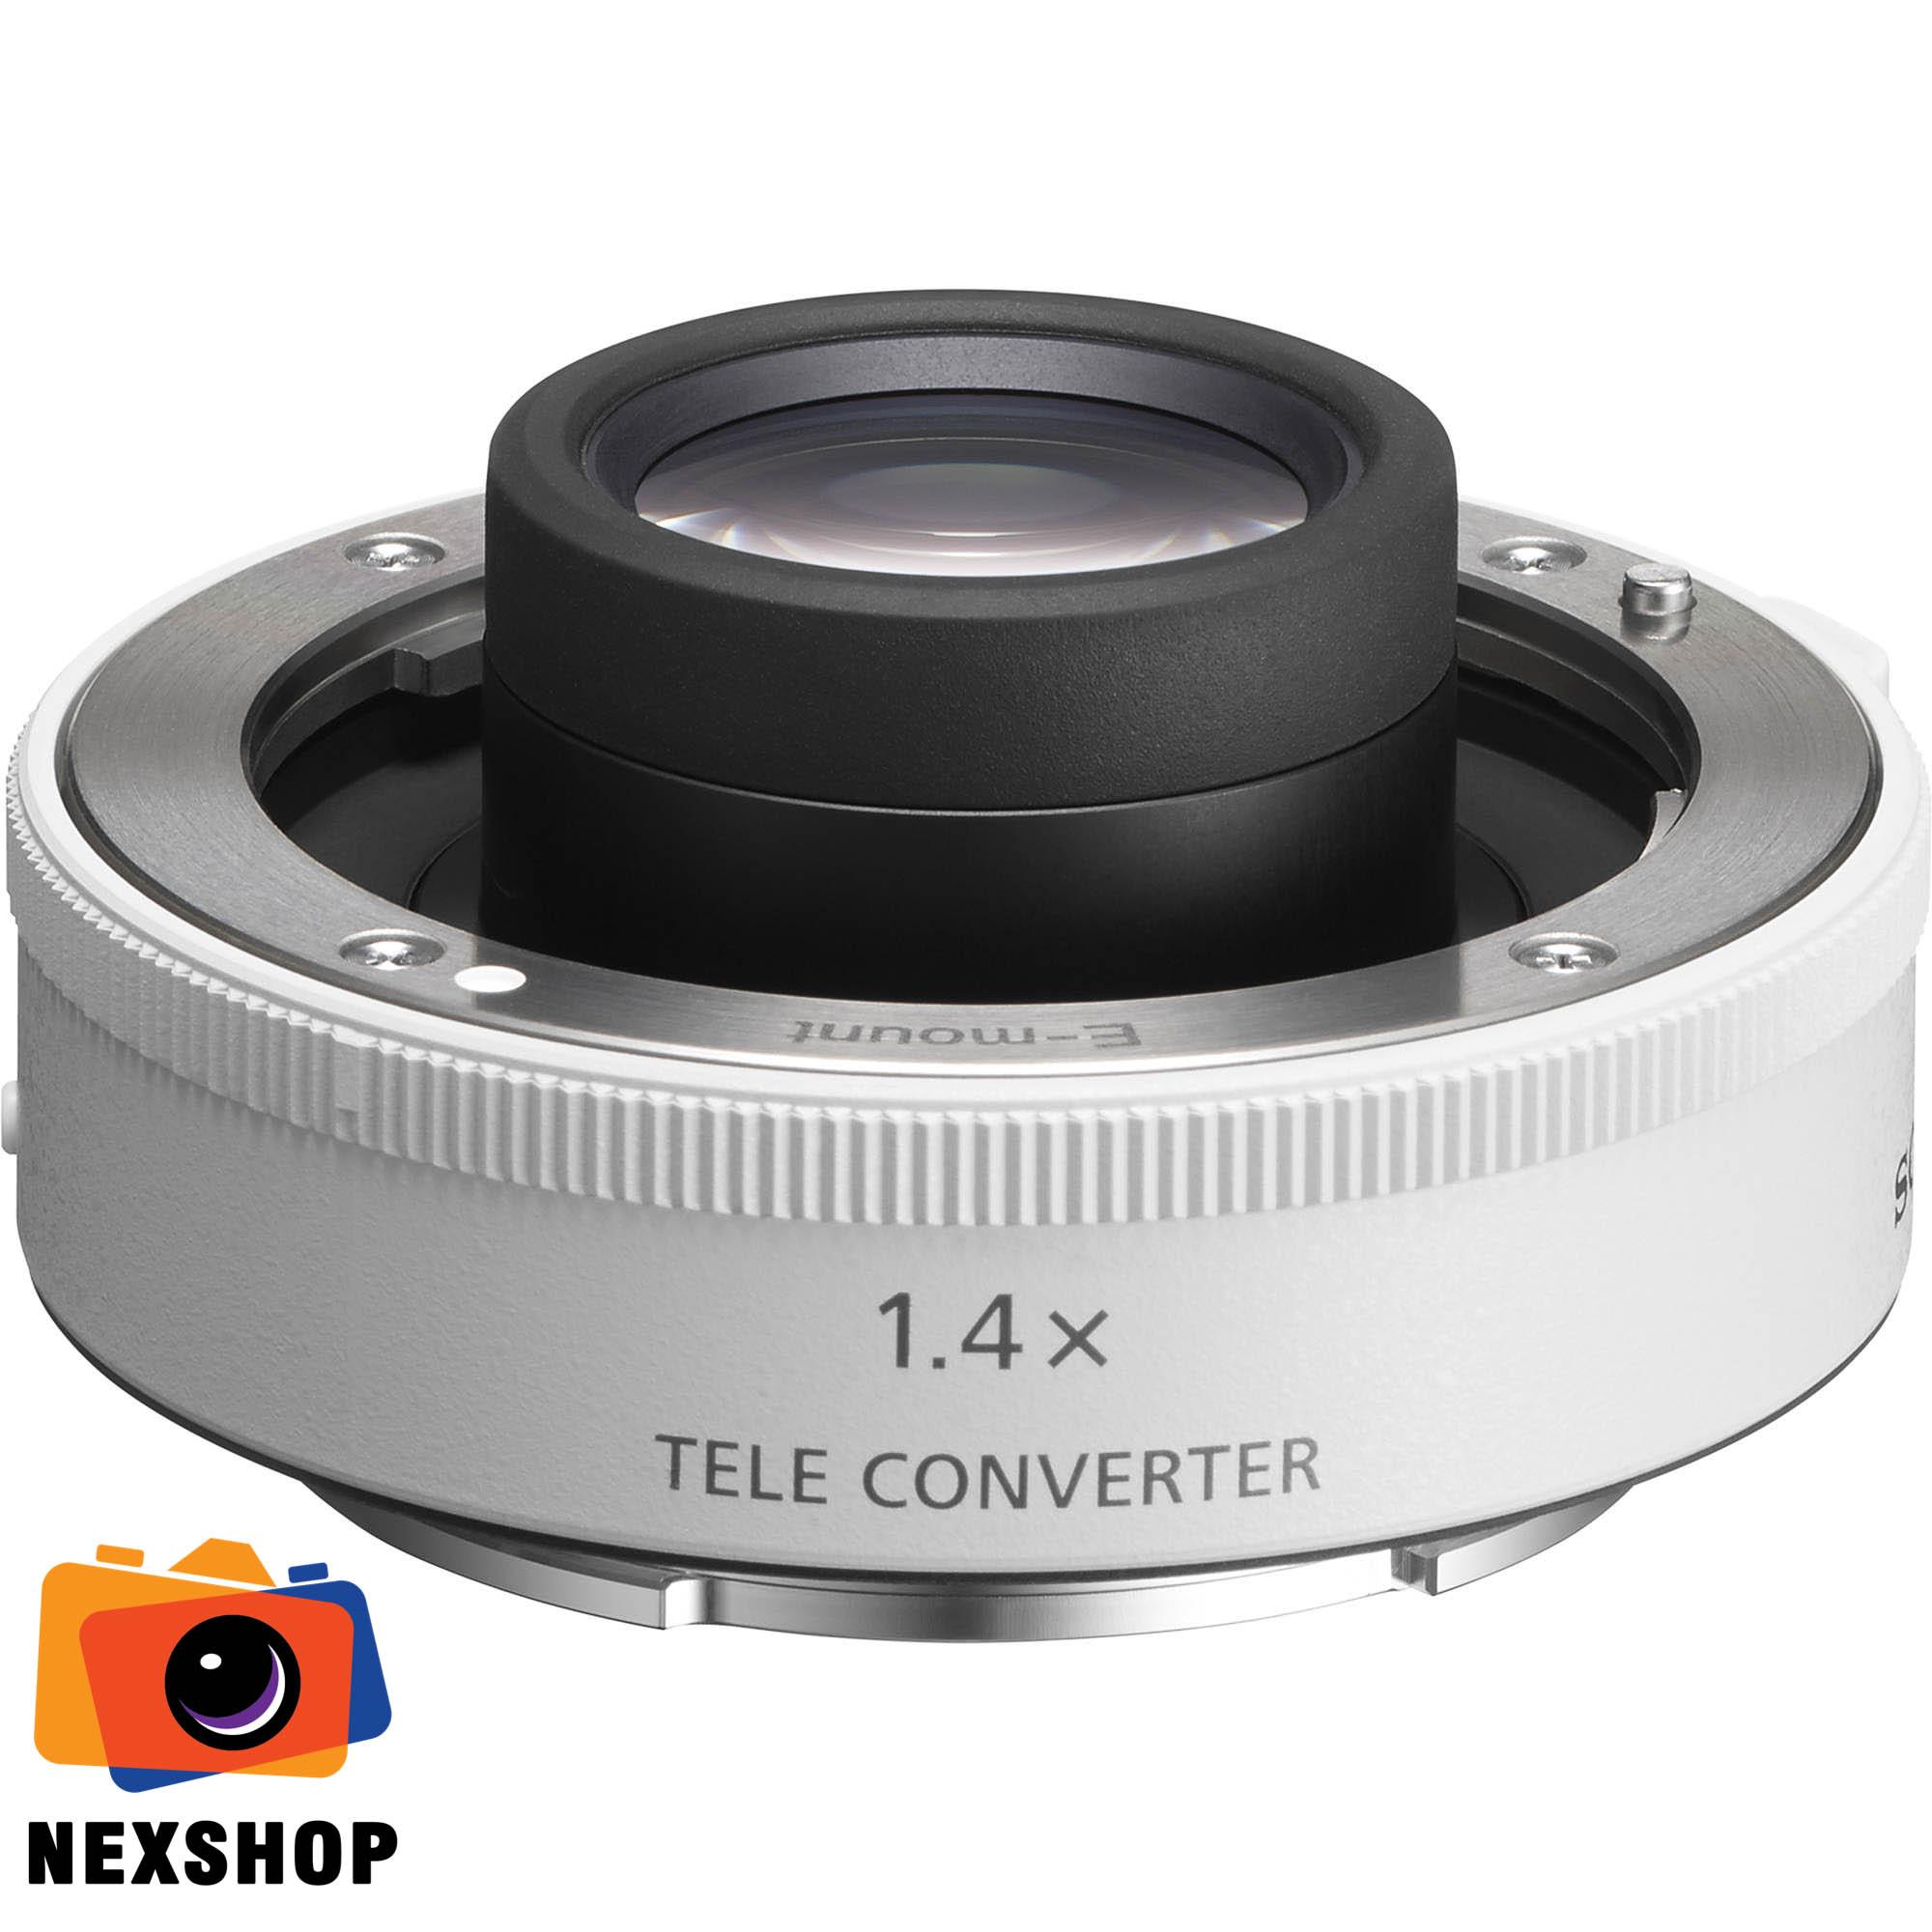 Ngàm chuyển đổi tiêu cự x1.4 Tele Converter - E-mount FullFrame - dùng cho ống kính SEL70200GM và SEL100400GM -...